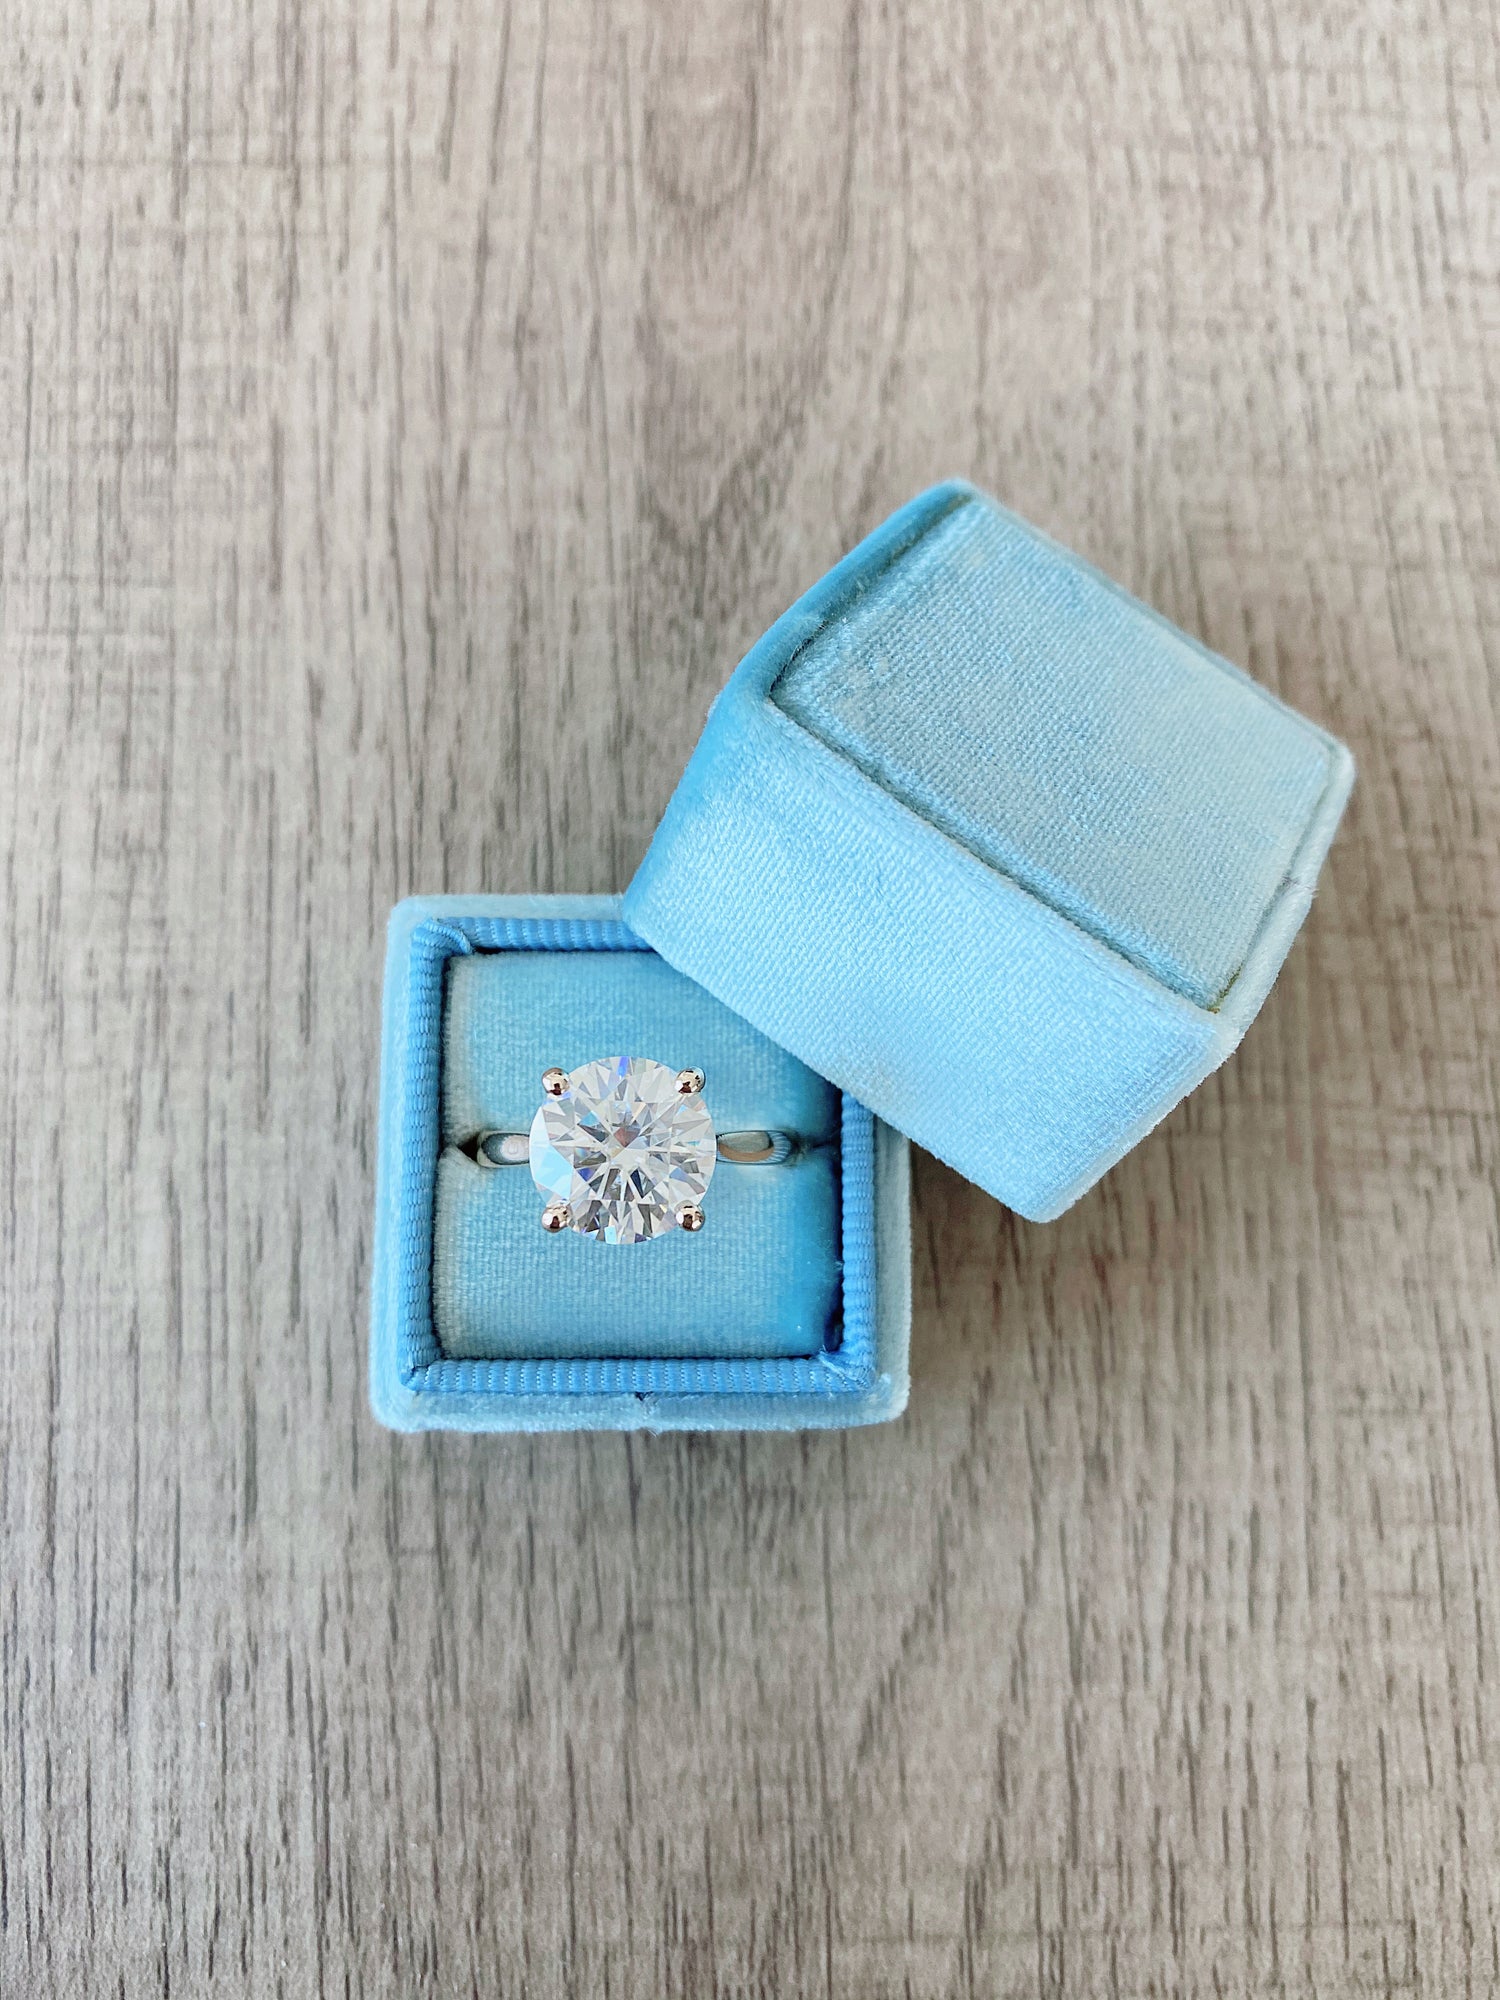 Engagement Rings Toronto